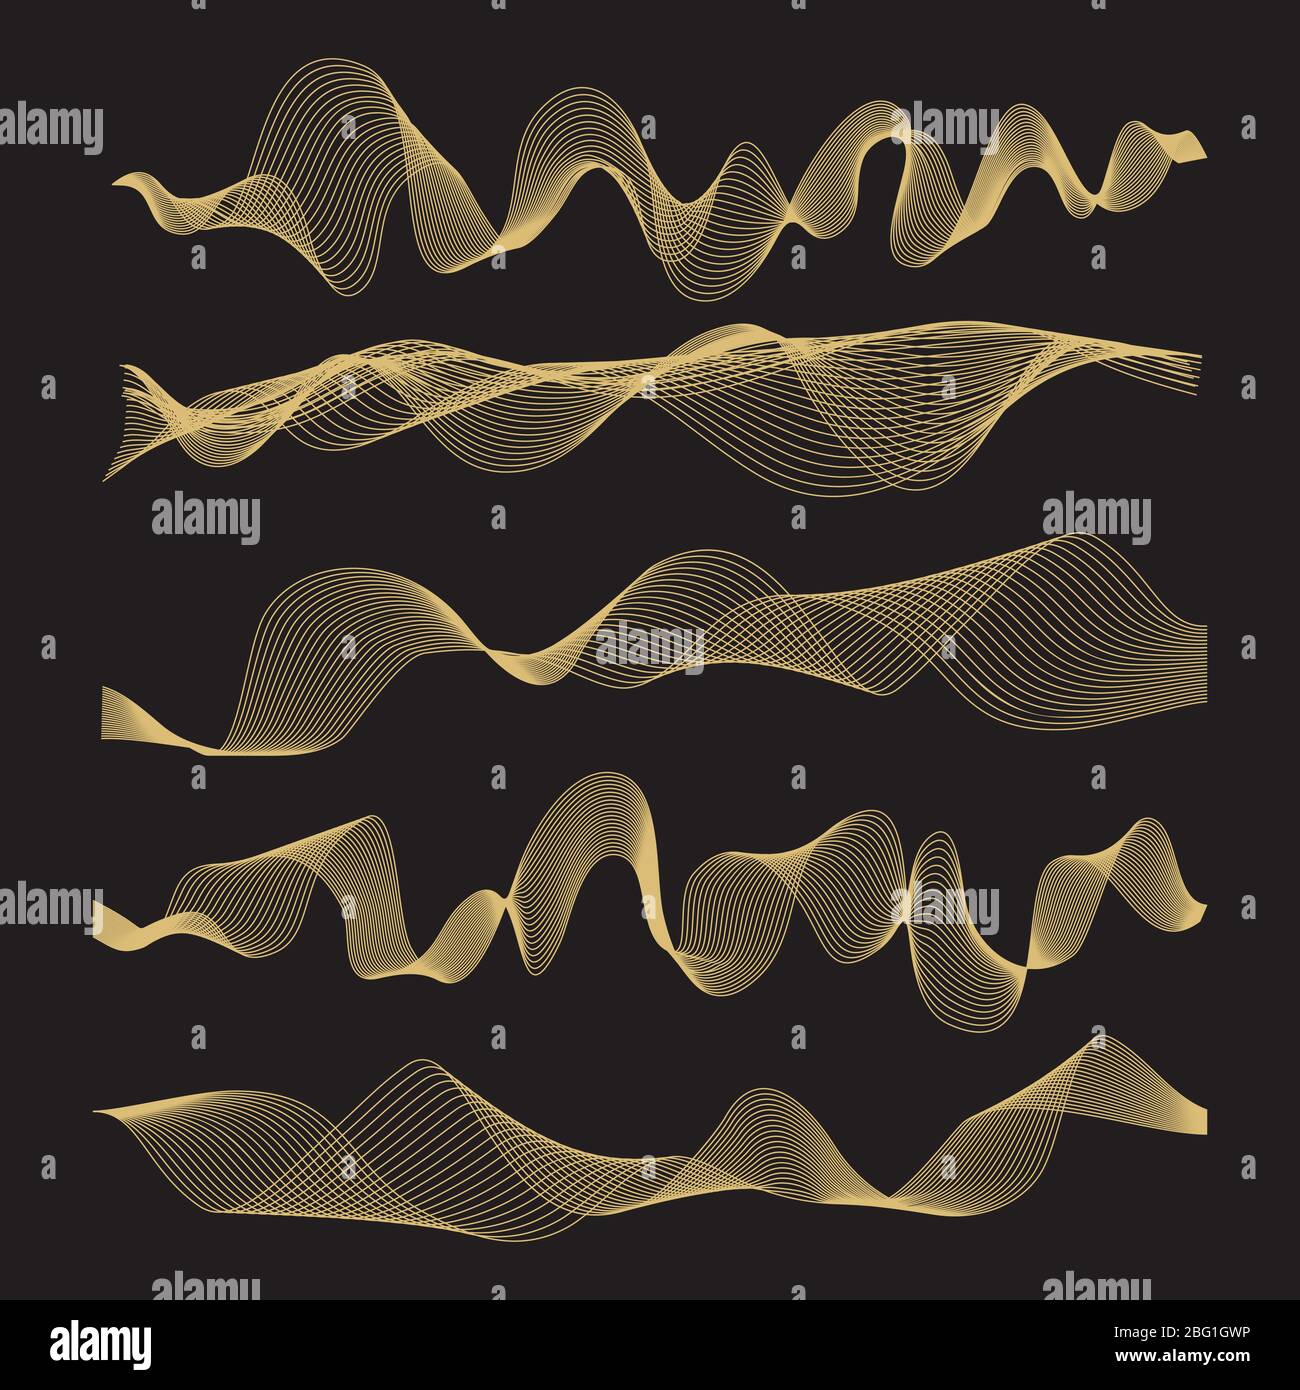 Vektor für abstrakte Wellen auf schwarzem Hintergrund gesetzt. Illustration der Kurvenlinie, kreative glatte digitale Wellenform Stock Vektor